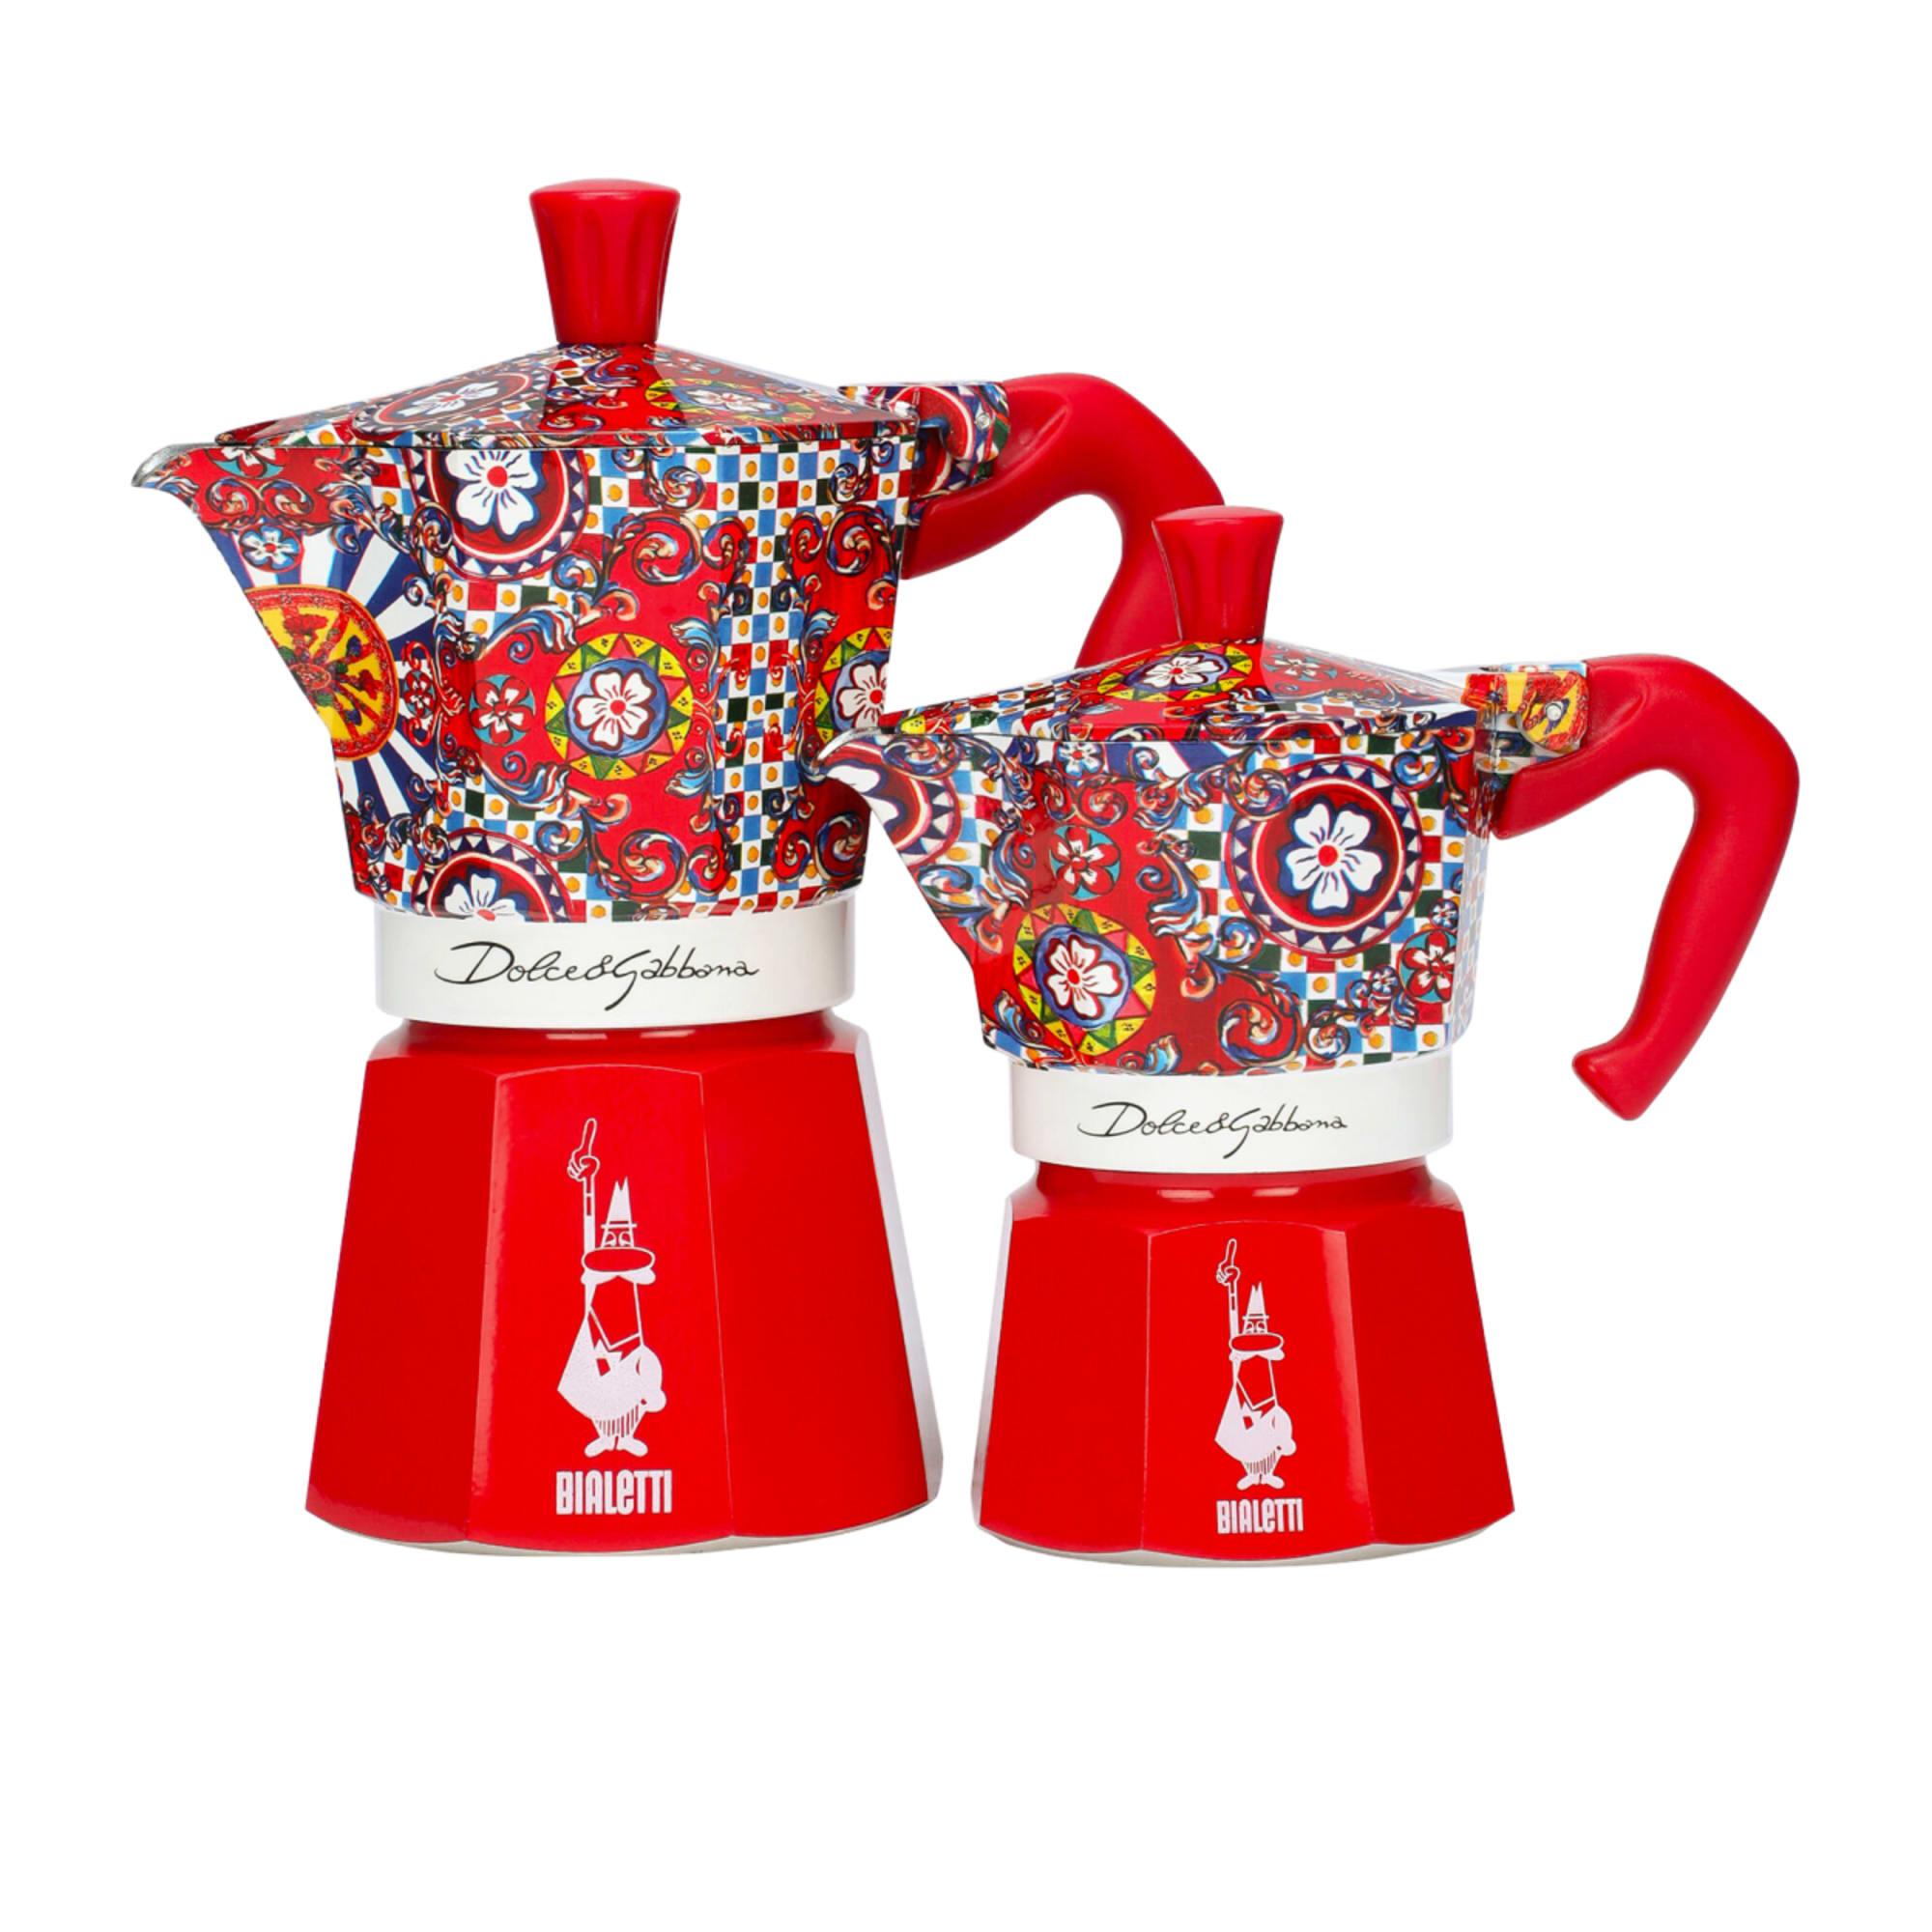 Bialetti Dolce & Gabbana Moka Express 6 cup Image 6